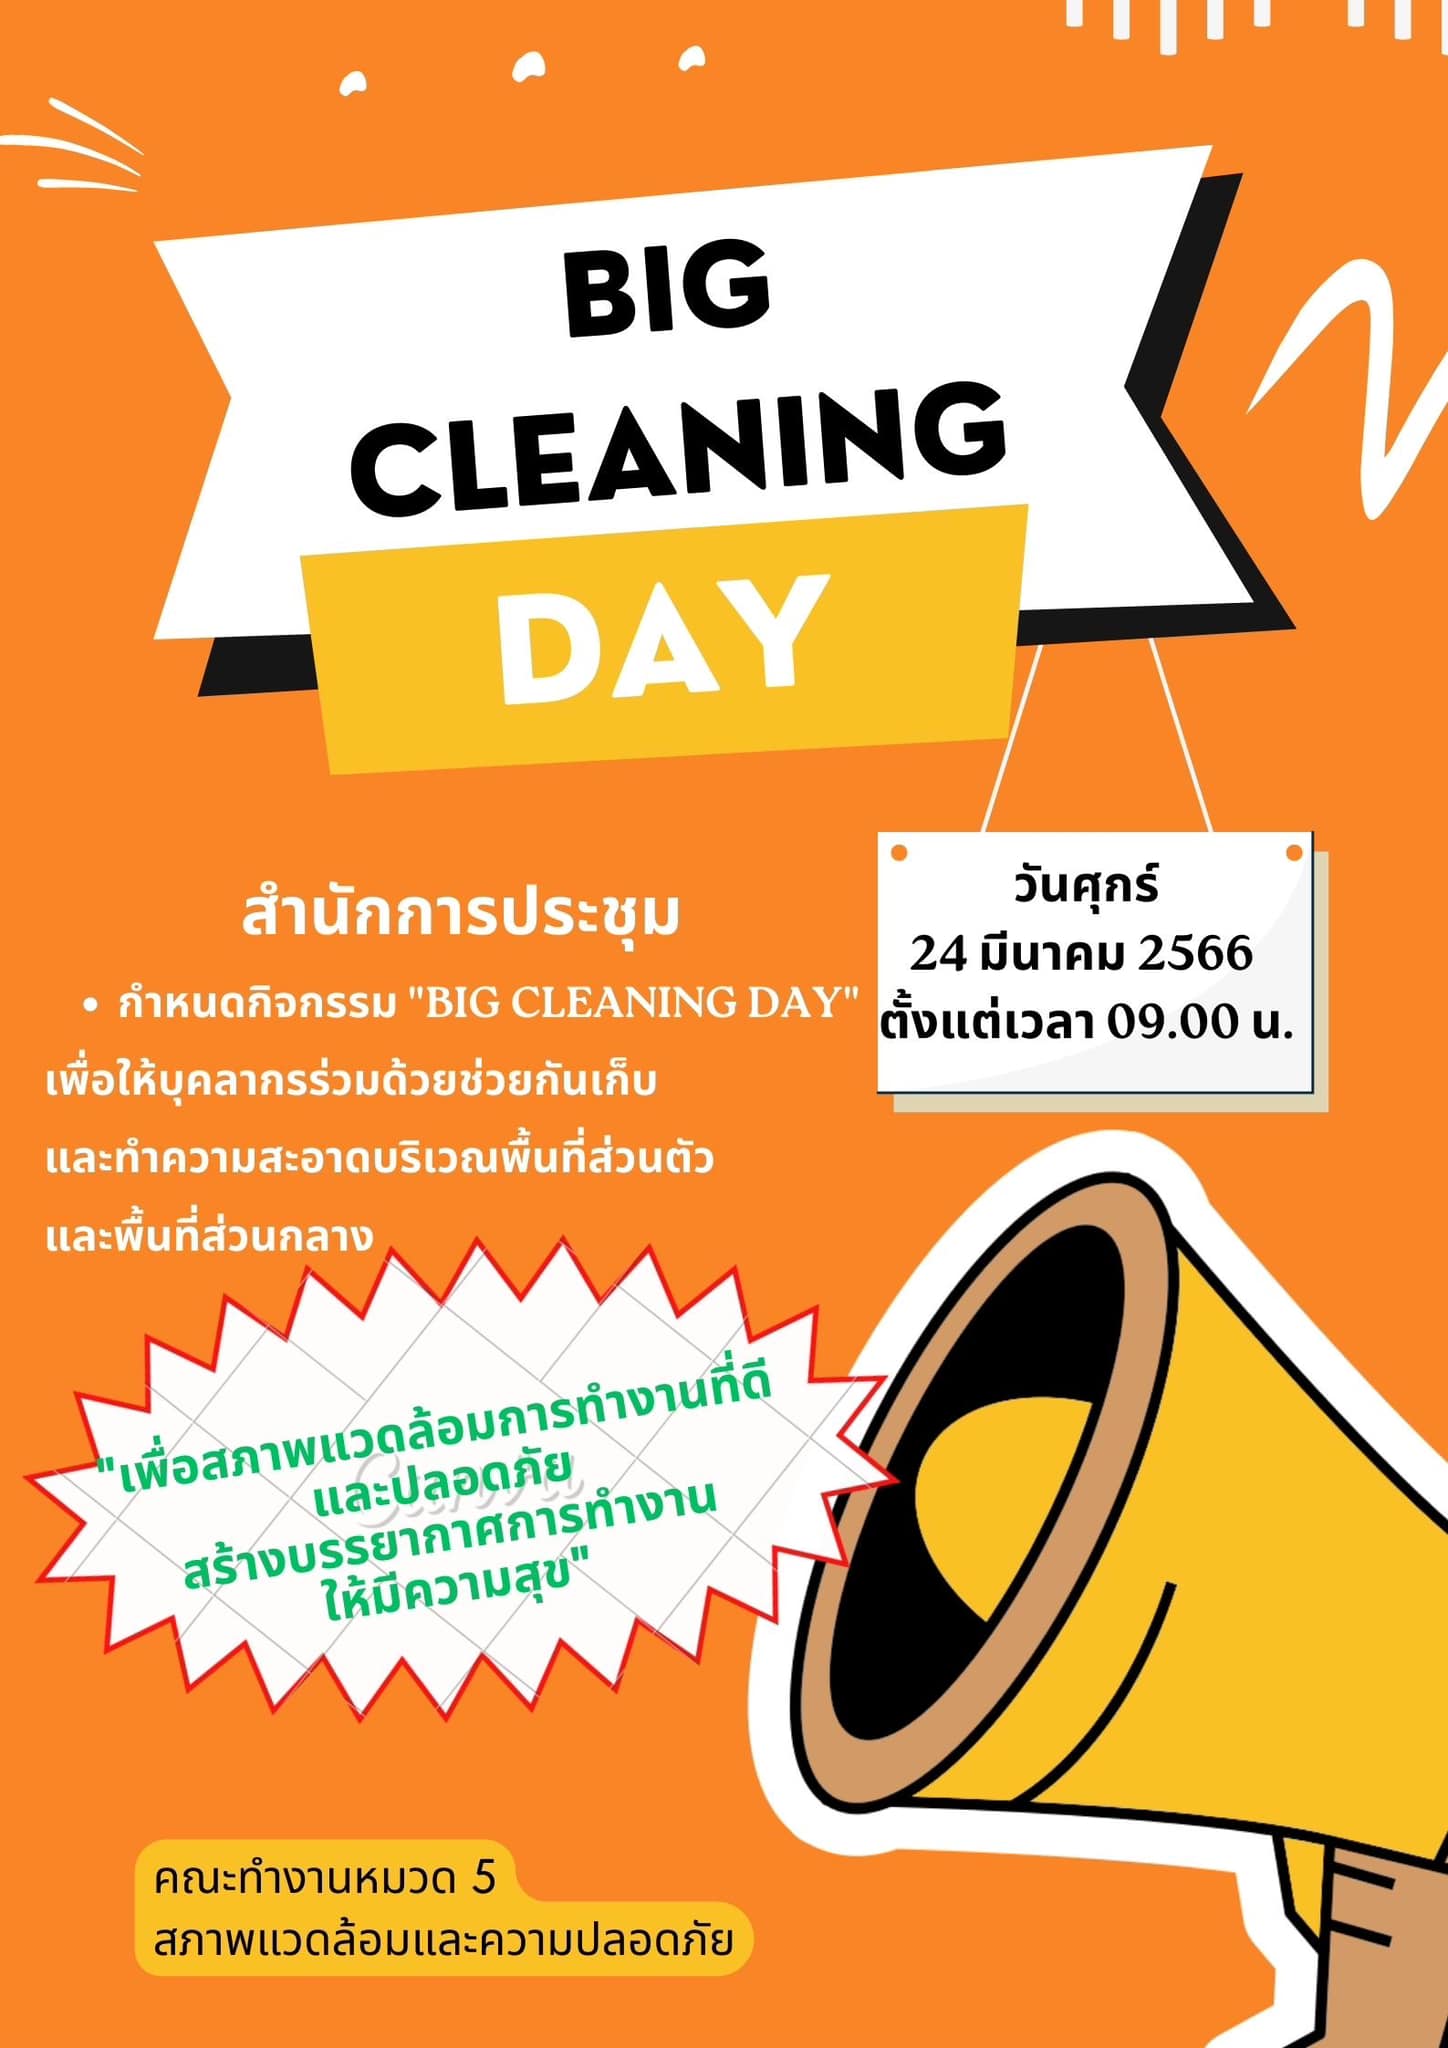 กิจกรรม Big Cleaning Day ครั้งที่ 1